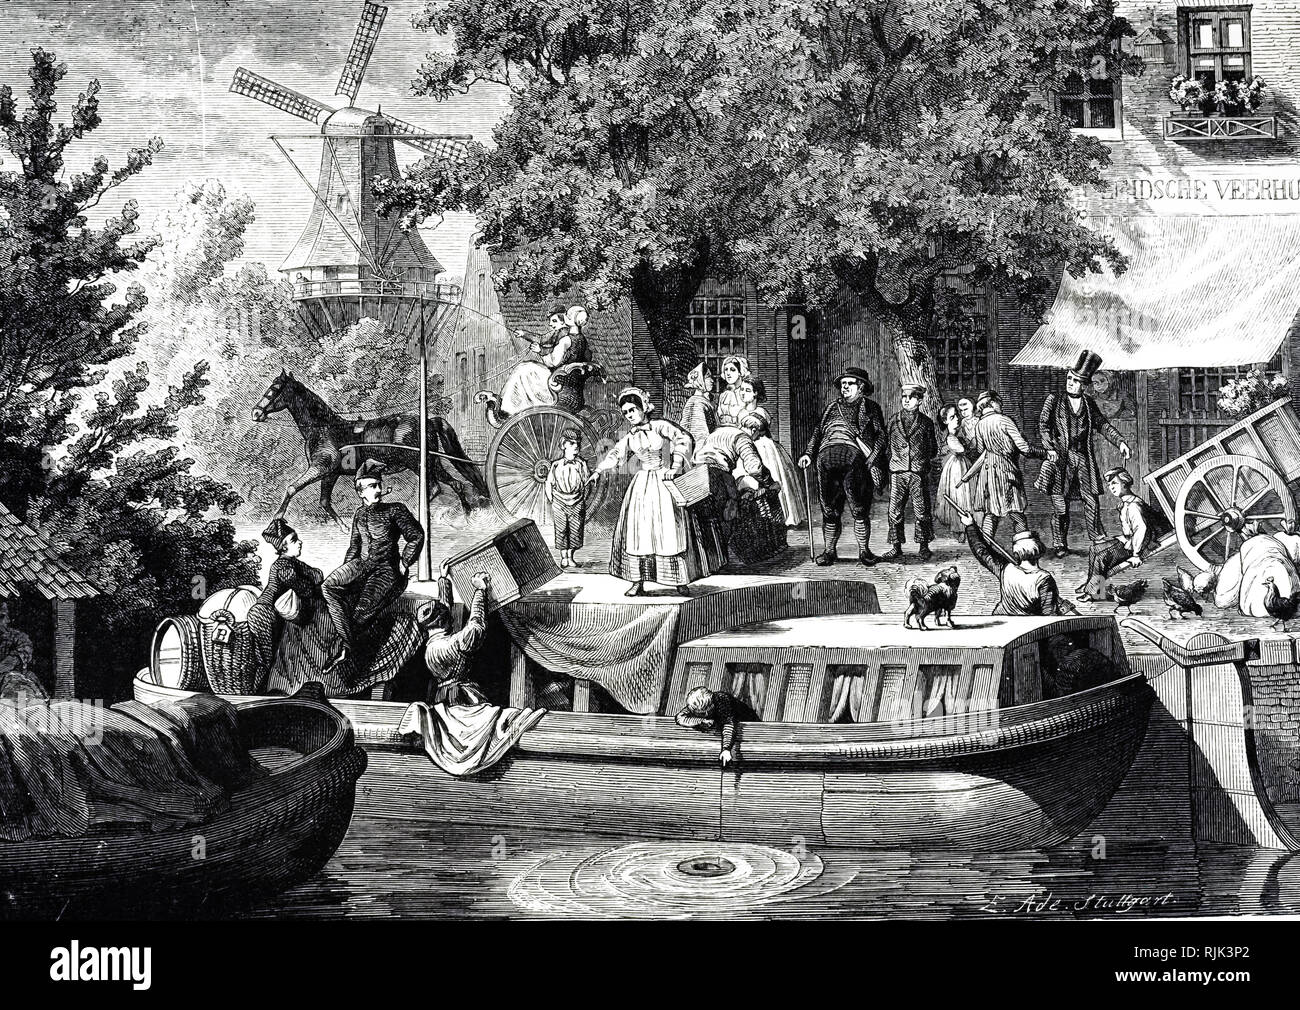 Grabado representando un canal neerlandés escena. Una barcaza se prepara para transportar una familia con sus pertenencias. En el fondo un molino de viento se convierte en la brisa. Fecha del siglo XIX Foto de stock